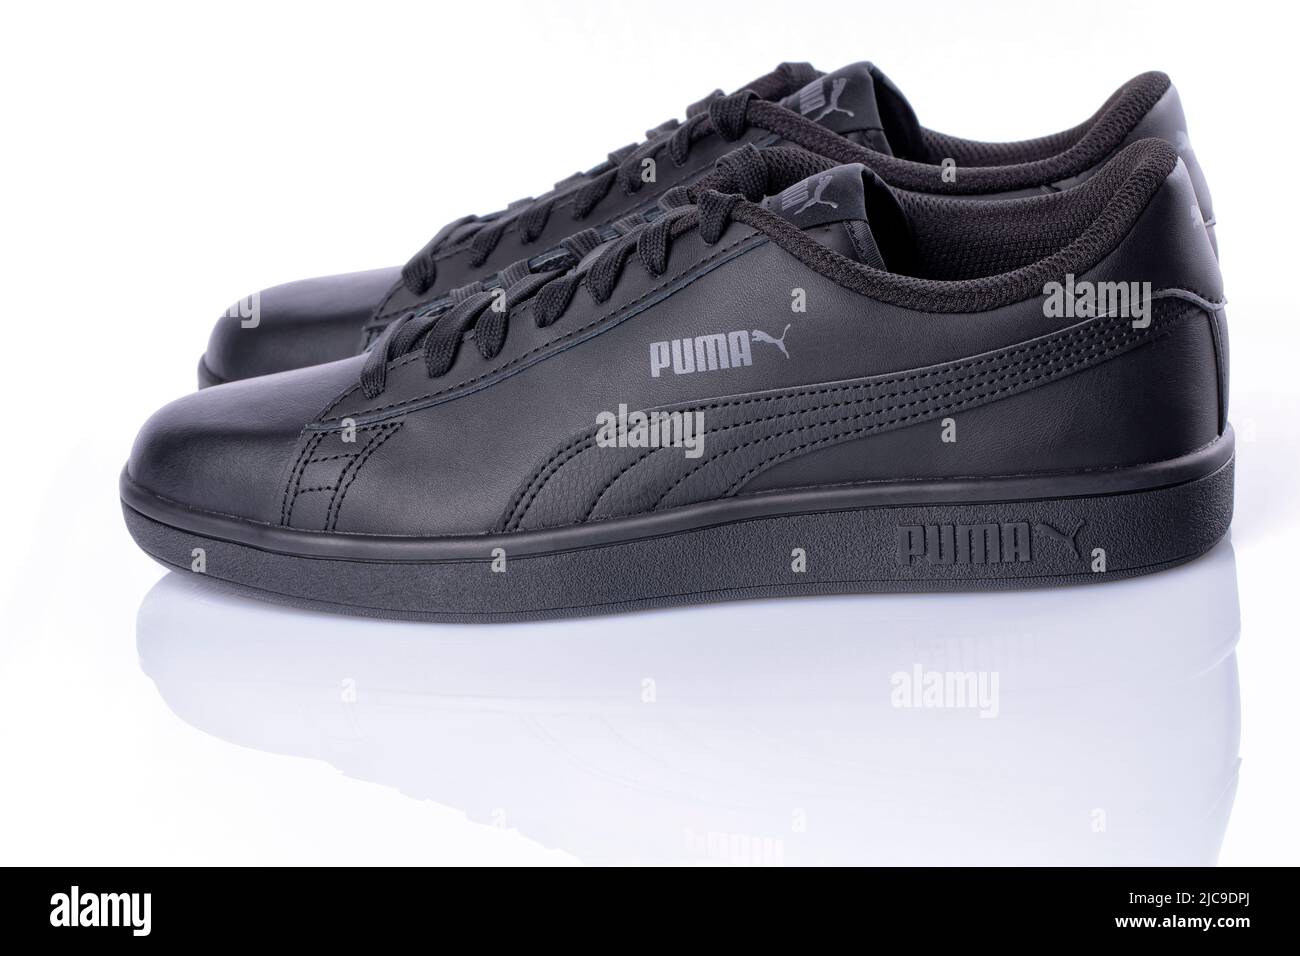 Détail des nouvelles sneakers Puma Smash v2 de couleur noire isolées sur blanc. Photo prise sur 10 juin 2022 en Espagne. Banque D'Images